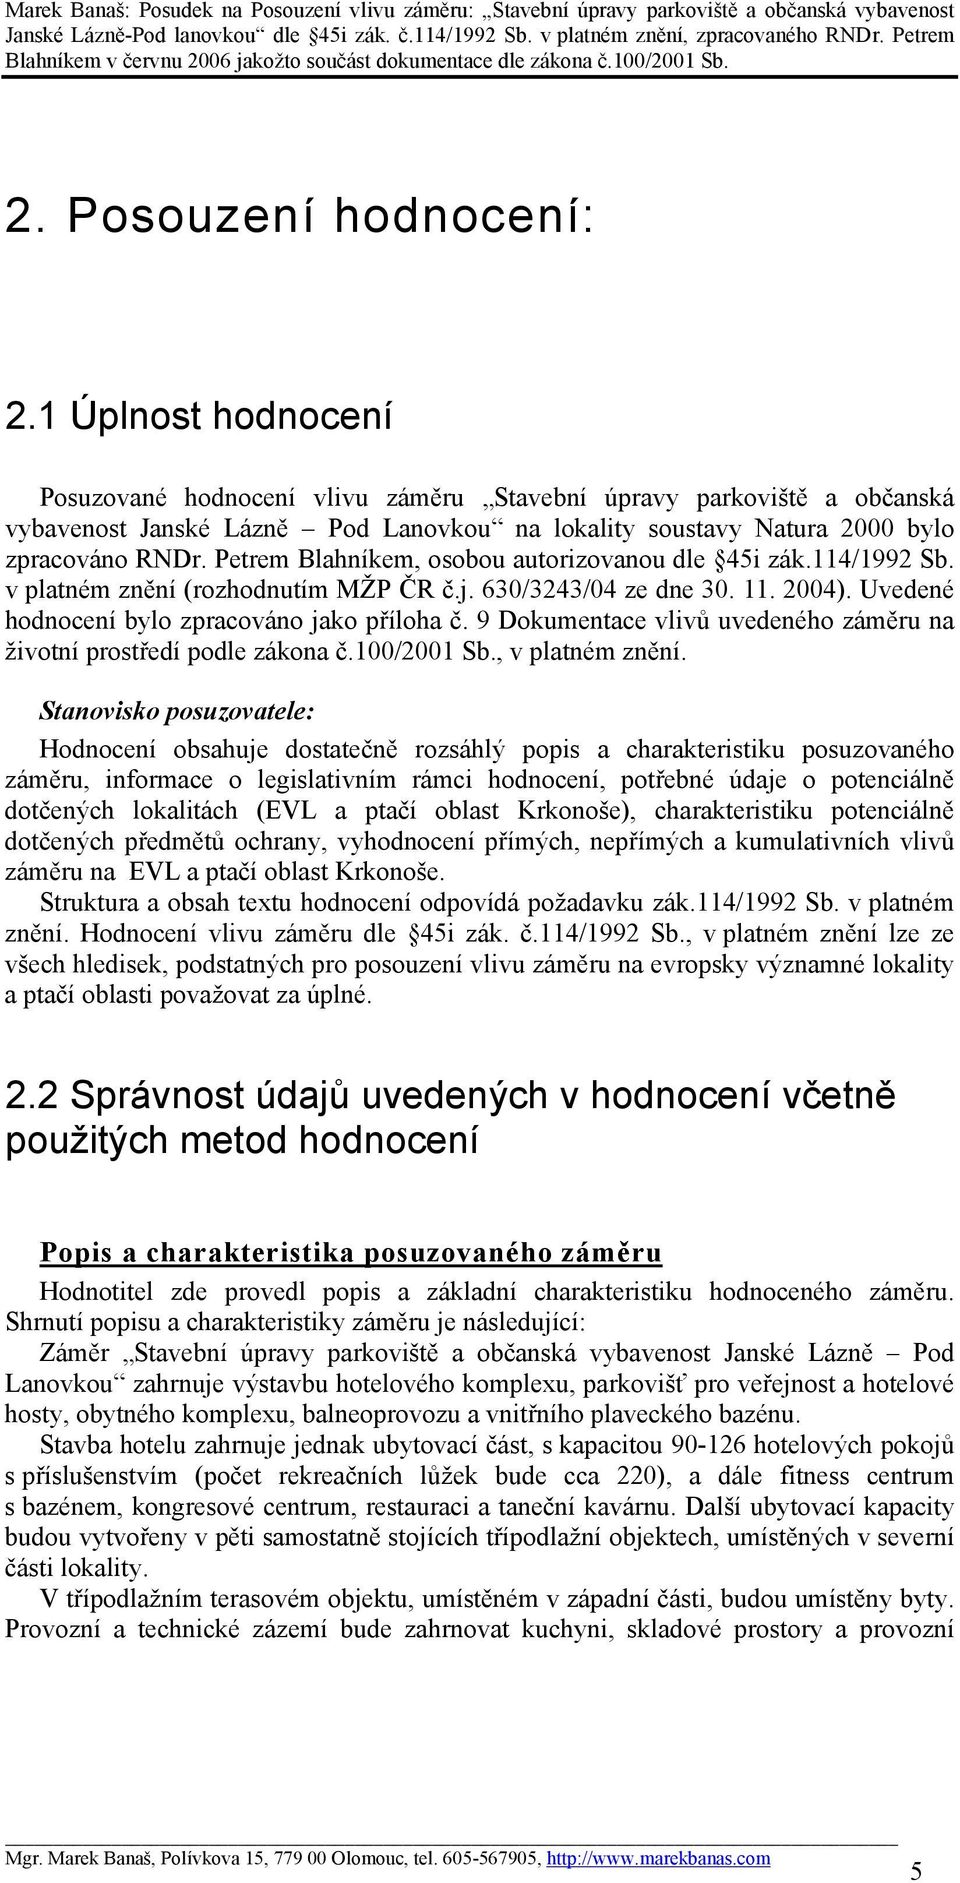 Petrem Blahníkem, osobou autorizovanou dle 45i zák.114/1992 Sb. v platném znění (rozhodnutím MŽP ČR č.j. 630/3243/04 ze dne 30. 11. 2004). Uvedené hodnocení bylo zpracováno jako příloha č.